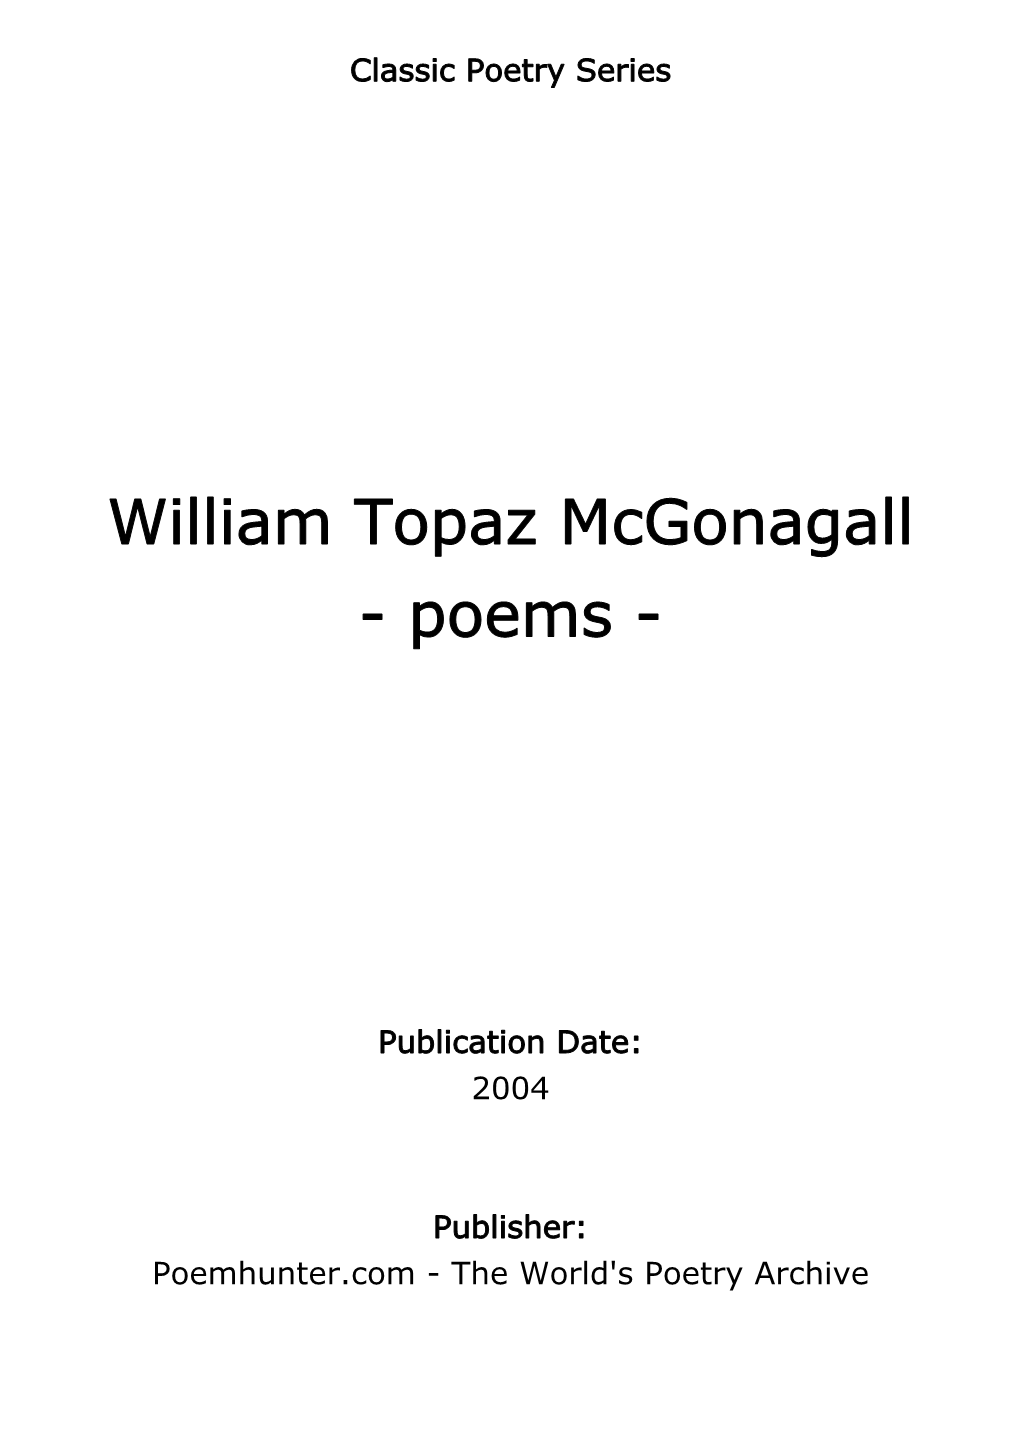 William Topaz Mcgonagall - Poems